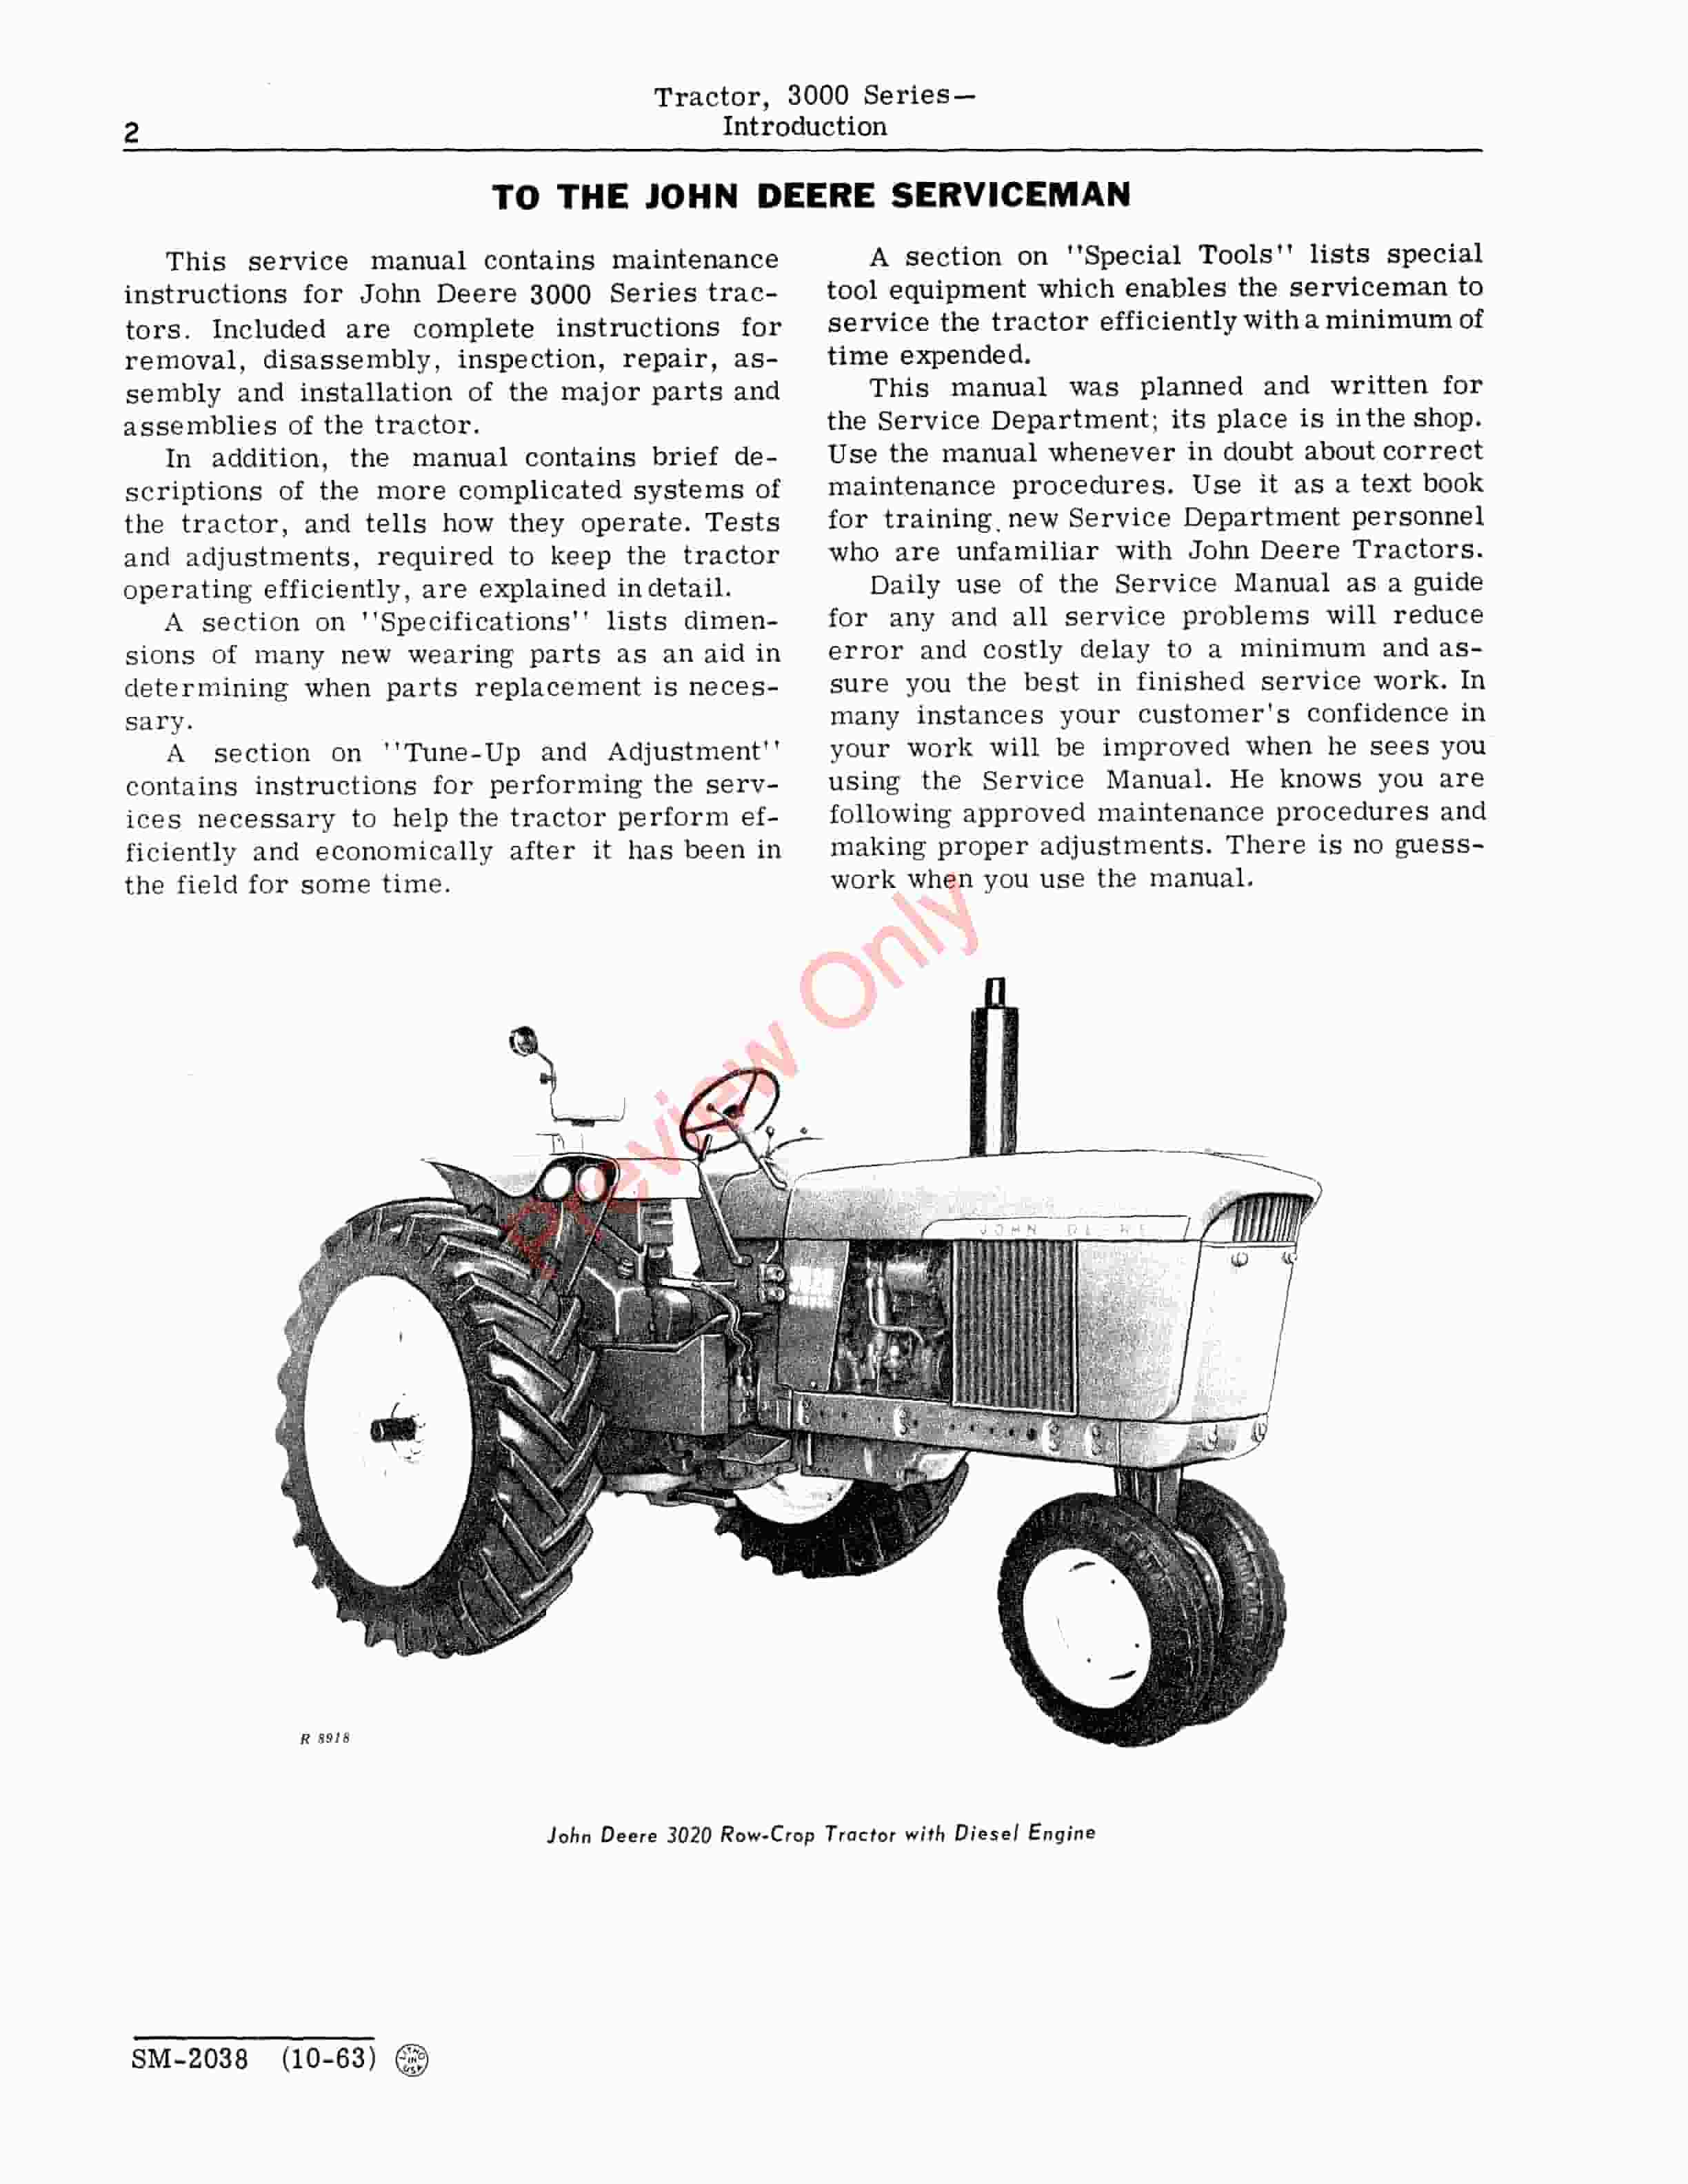 John Deere 3000 Series Tractors Service Manual SM2038 01MAR67 4